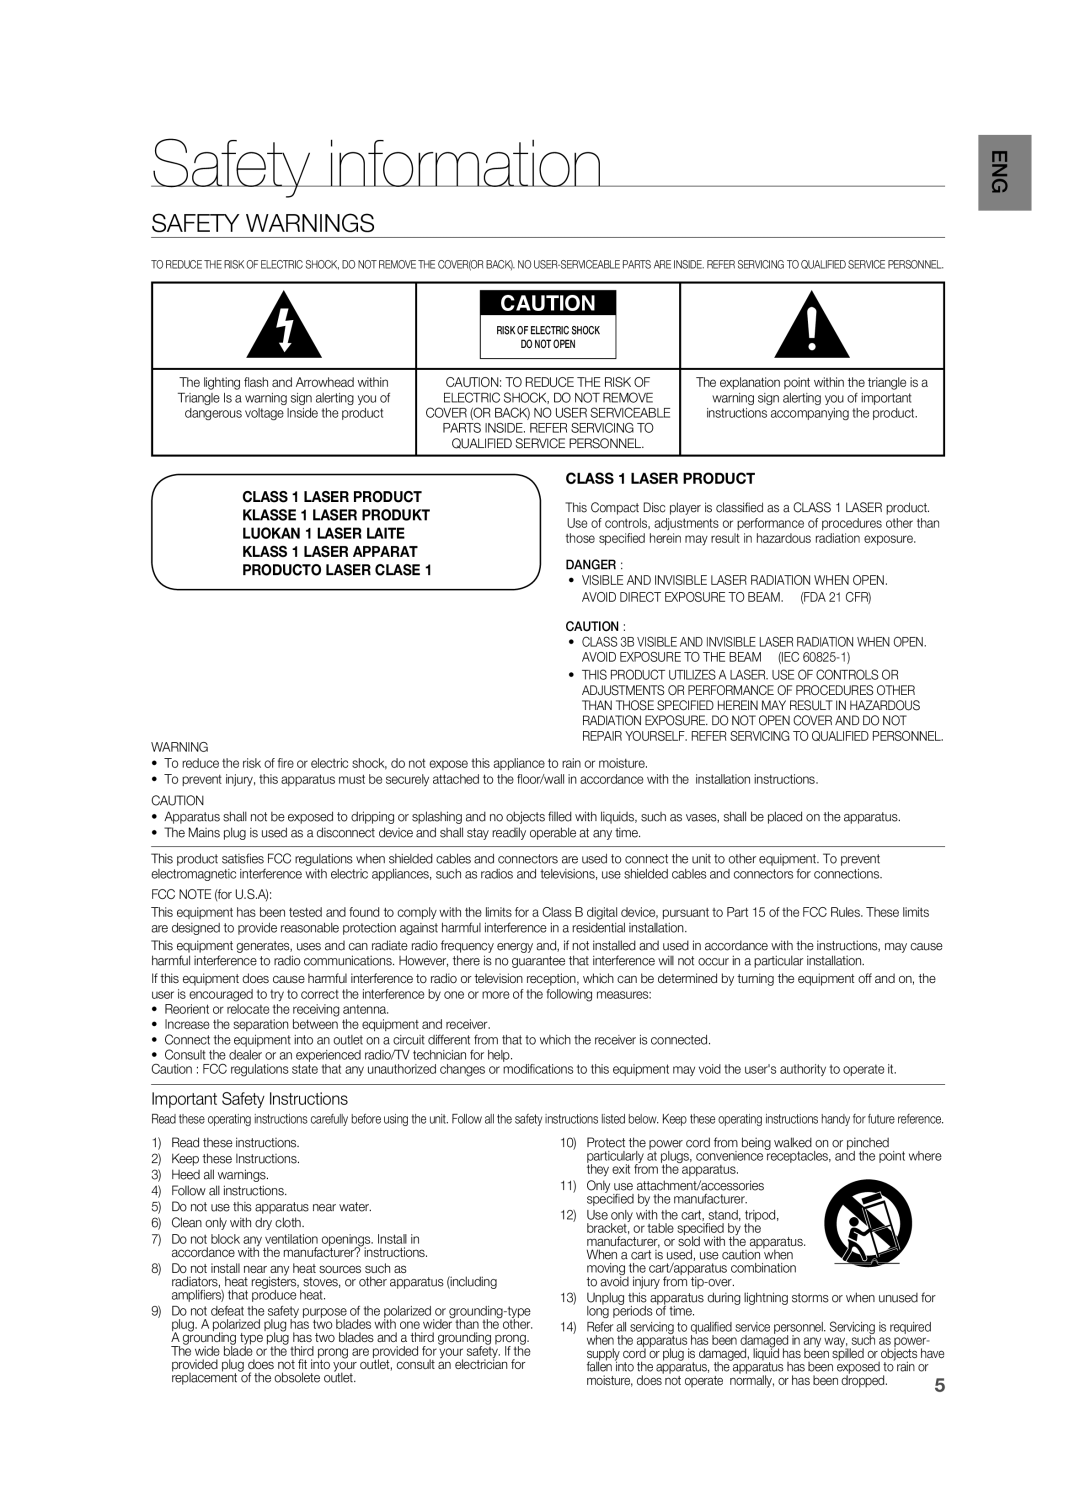 Samsung HT-BD8200 user manual Safety information, Safety Warnings, KLASSE 1 LASER PRODUKT, Producto Laser Clase 